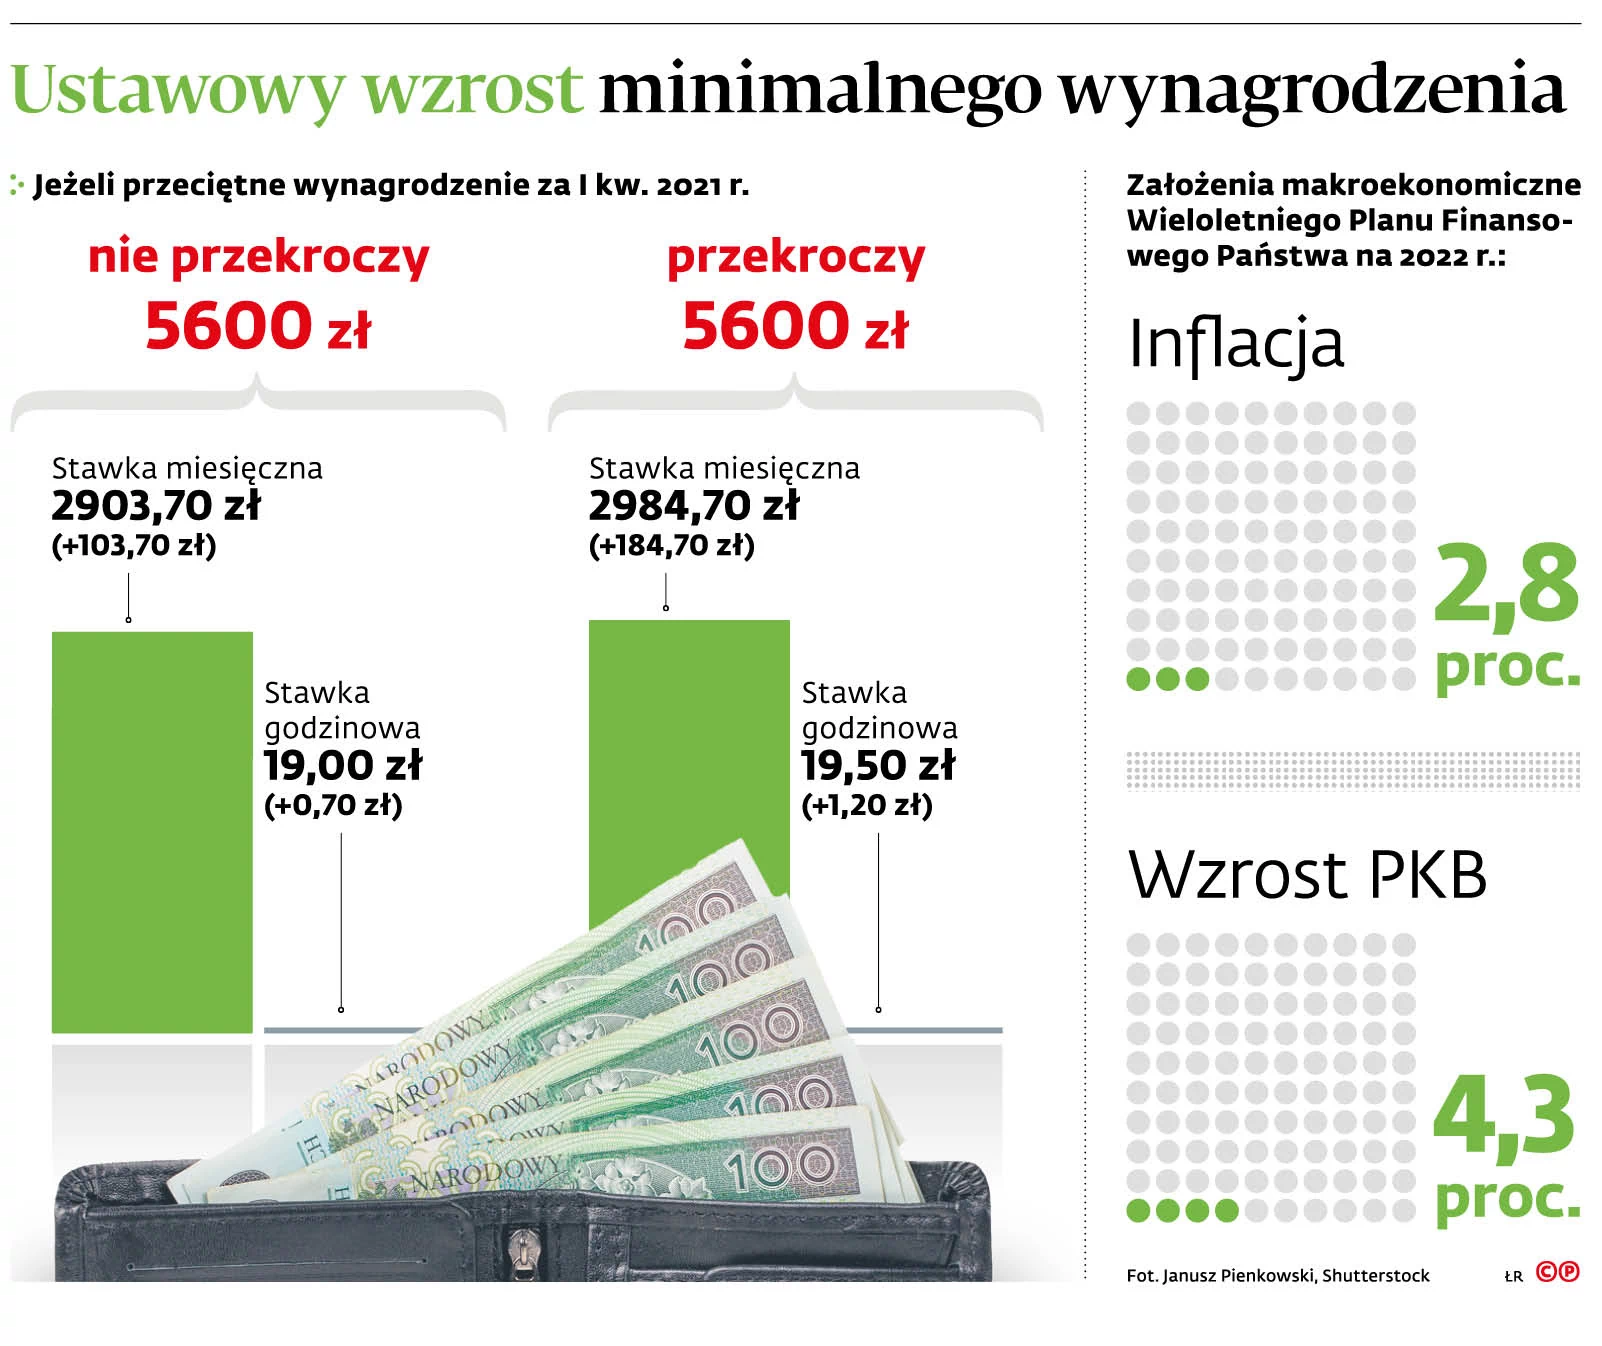 Płaca minimalna 2022 mocno w górę. Znamy kwotę minimalnej podwyżki -  GazetaPrawna.pl